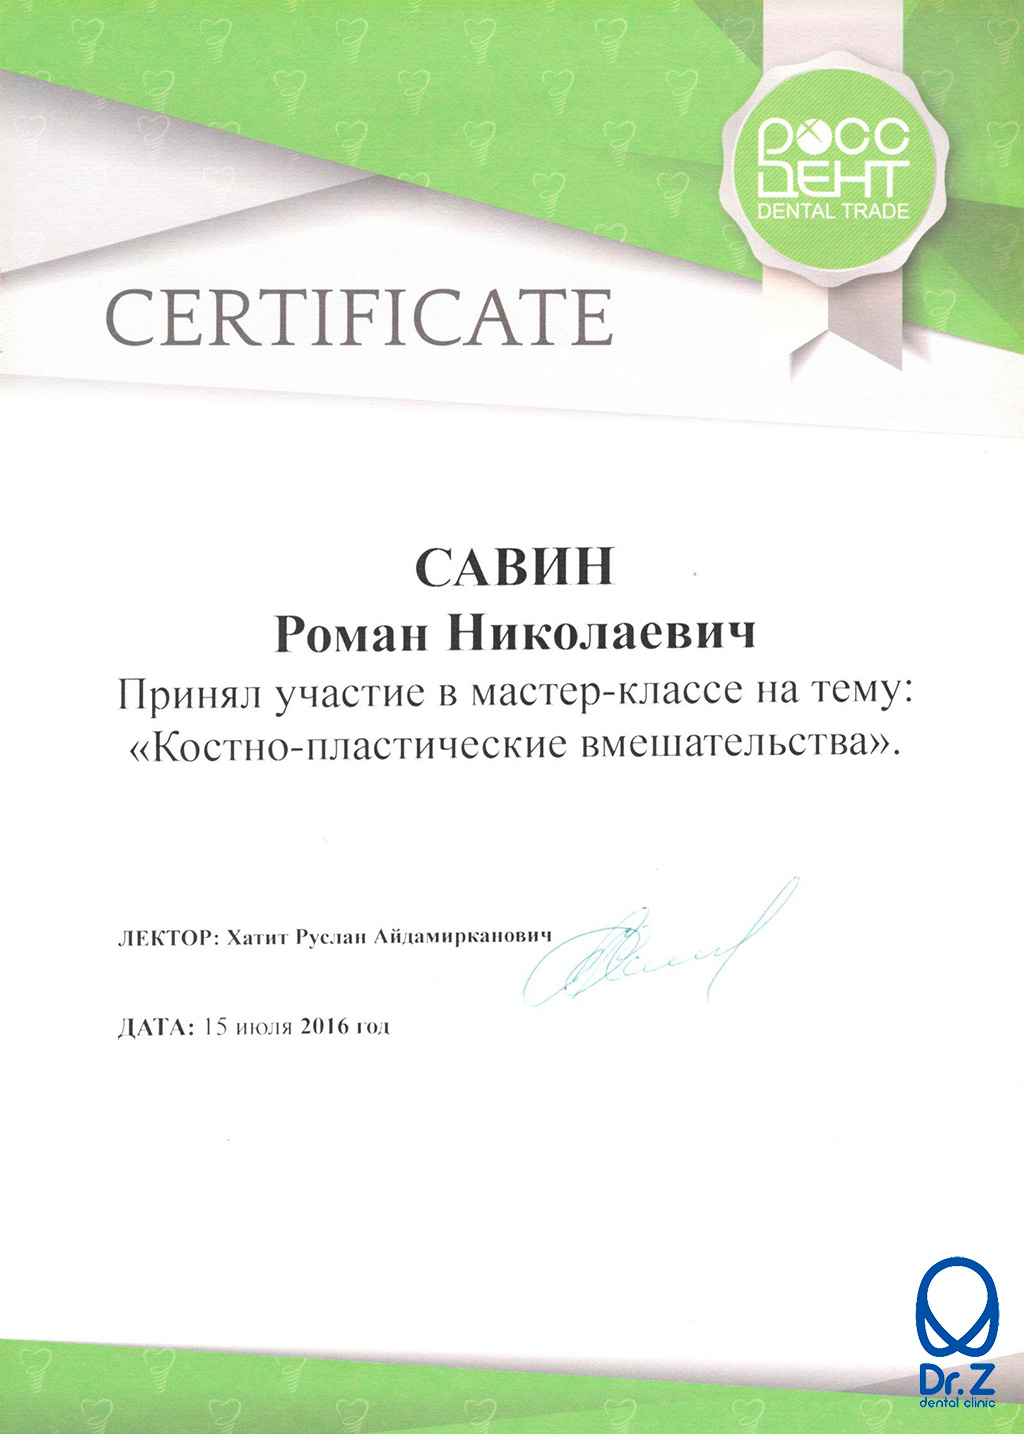 Сертификат по результатам прохождения Савиным Романом Николаевичем курса обучения по теме 